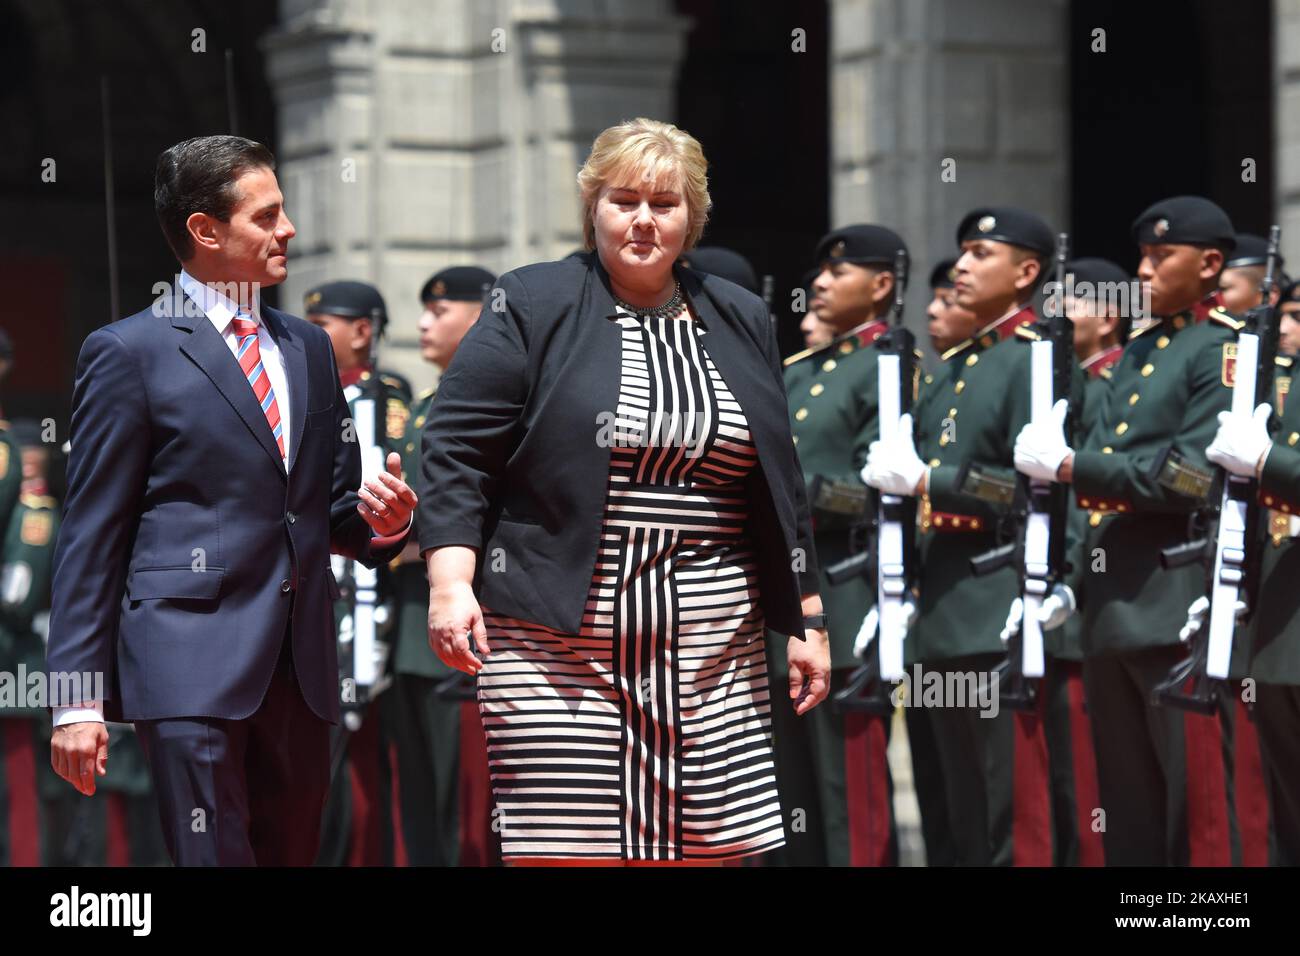 Il Presidente messicano Enrique pena Nieto (R) e il primo ministro norvegese Erna Solberg, si sono Uniti alla cerimonia di benvenuto del 12 aprile 2018 al Palazzo Nazionale di Città del Messico. (Foto di Carlos Tischler/NurPhoto) Foto Stock